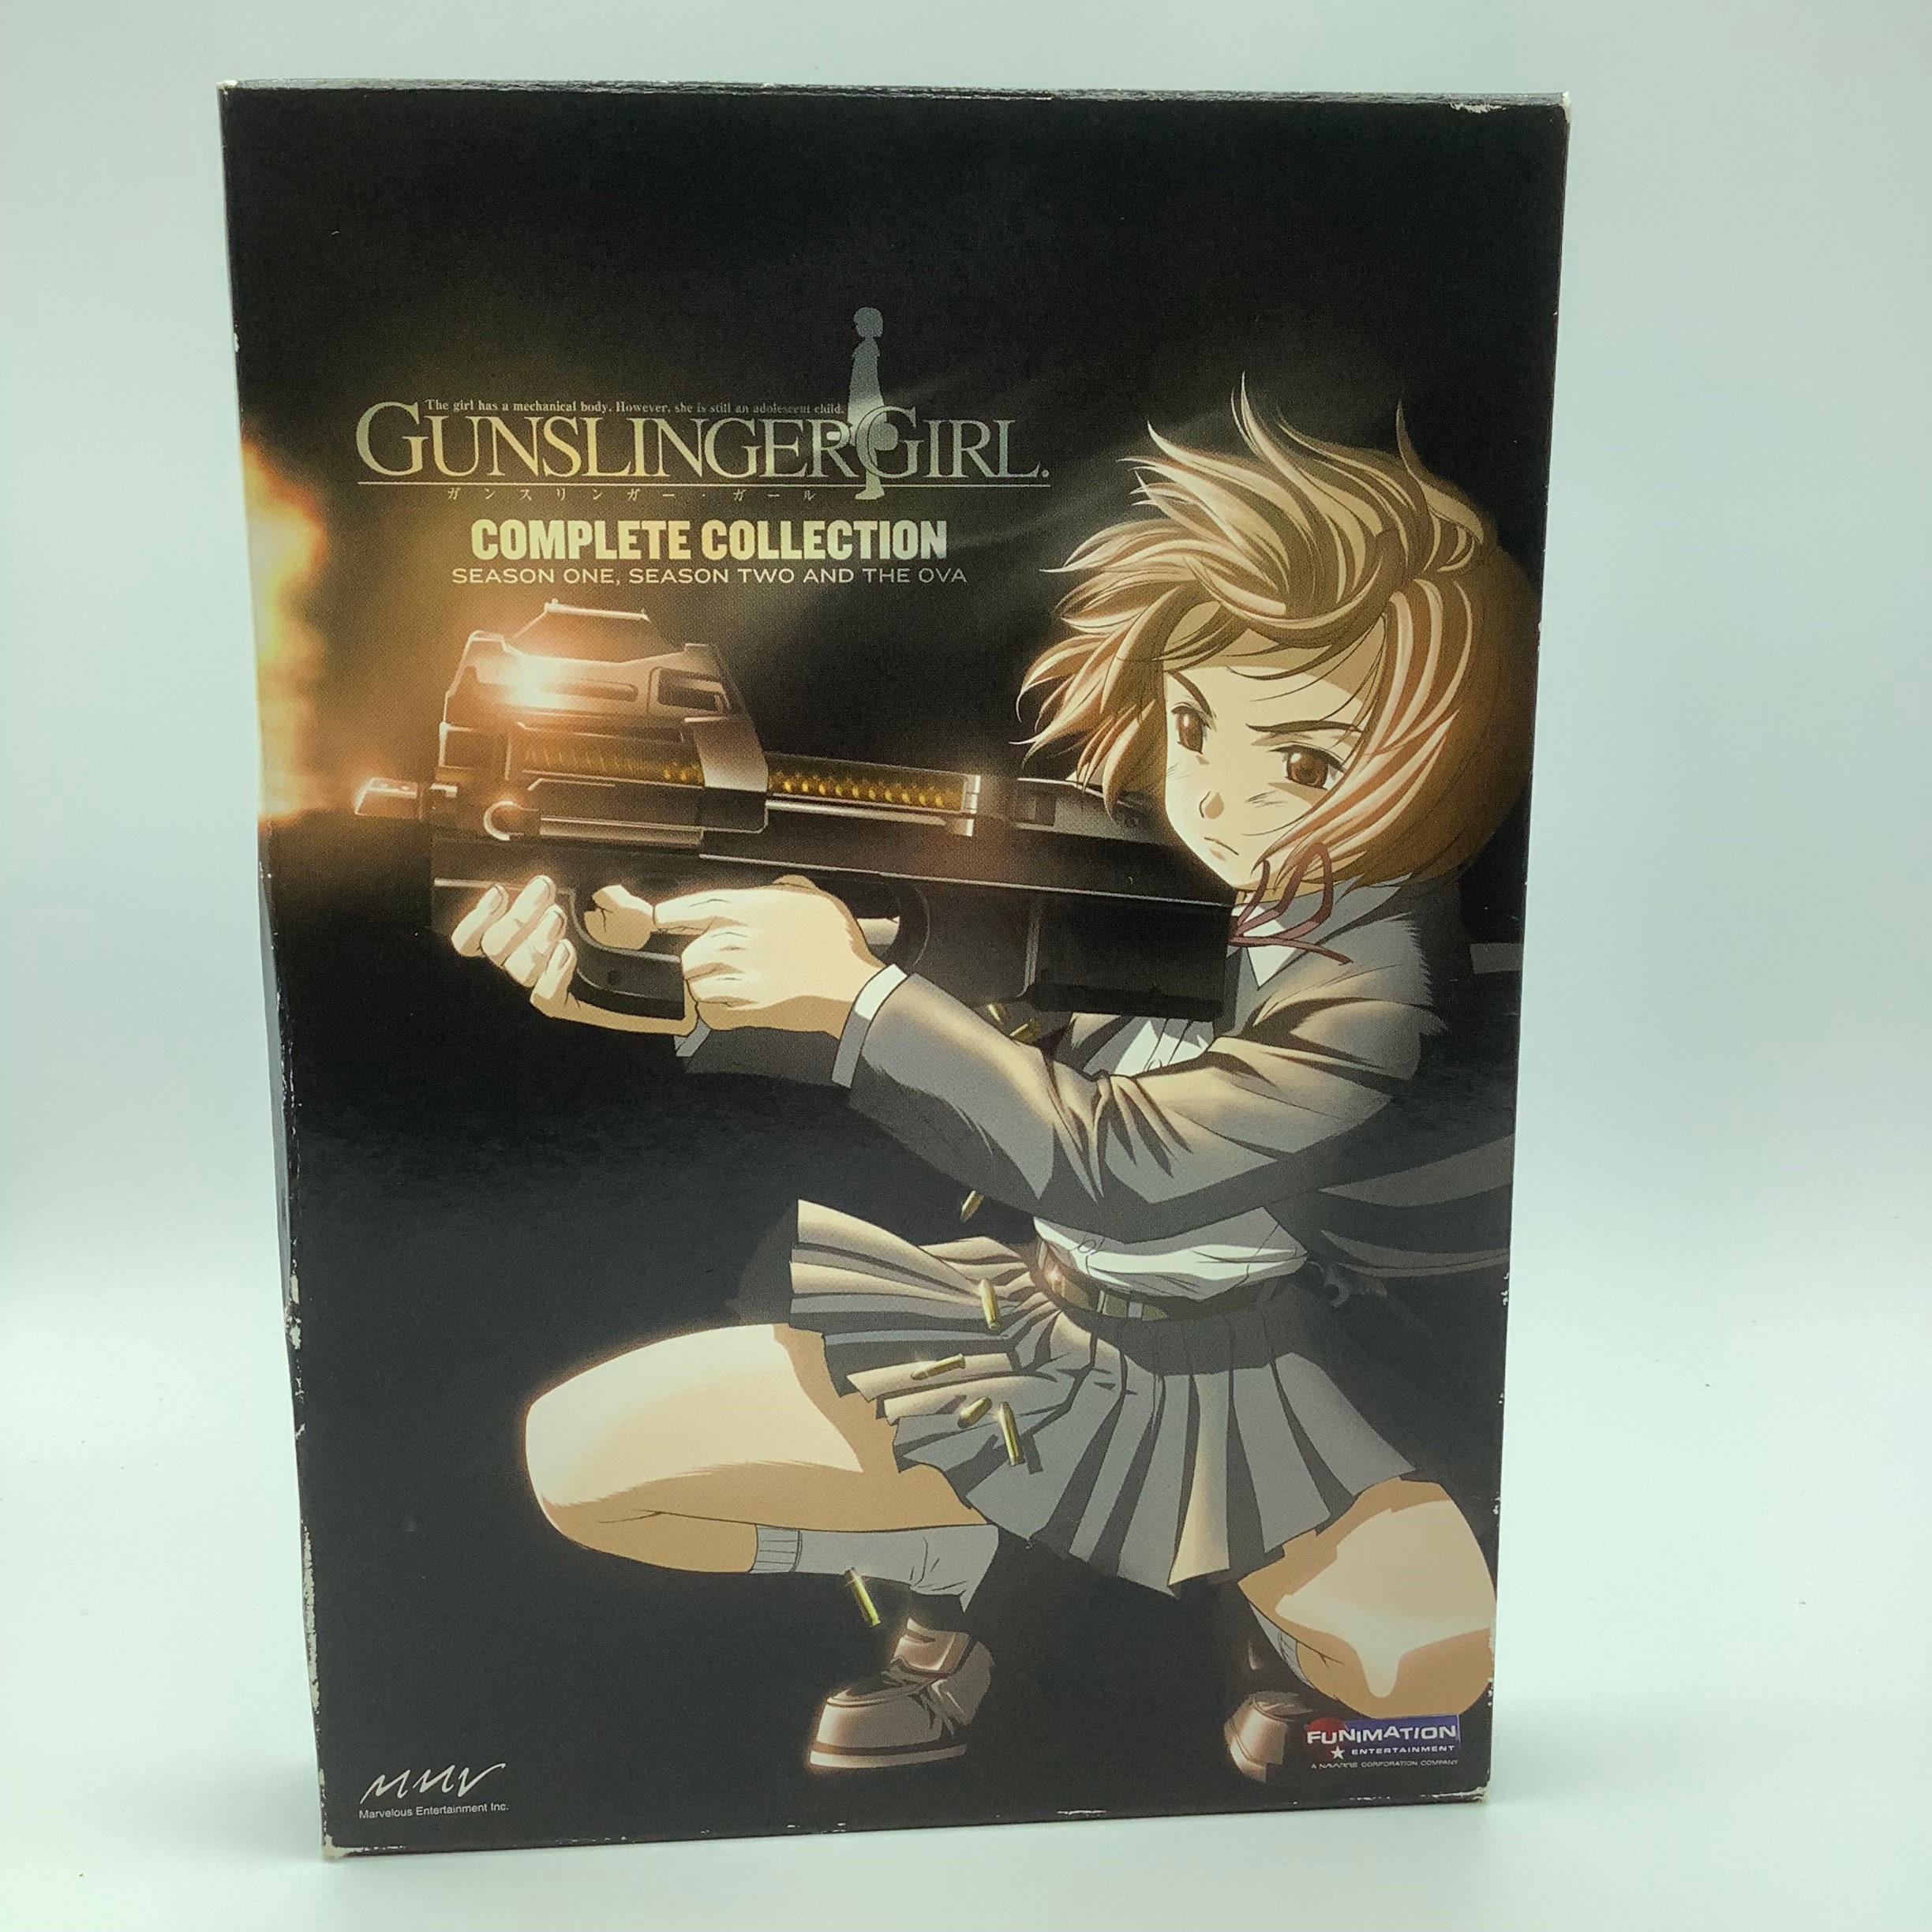  Gunslinger Girl Starter Set [DVD] : Movies & TV